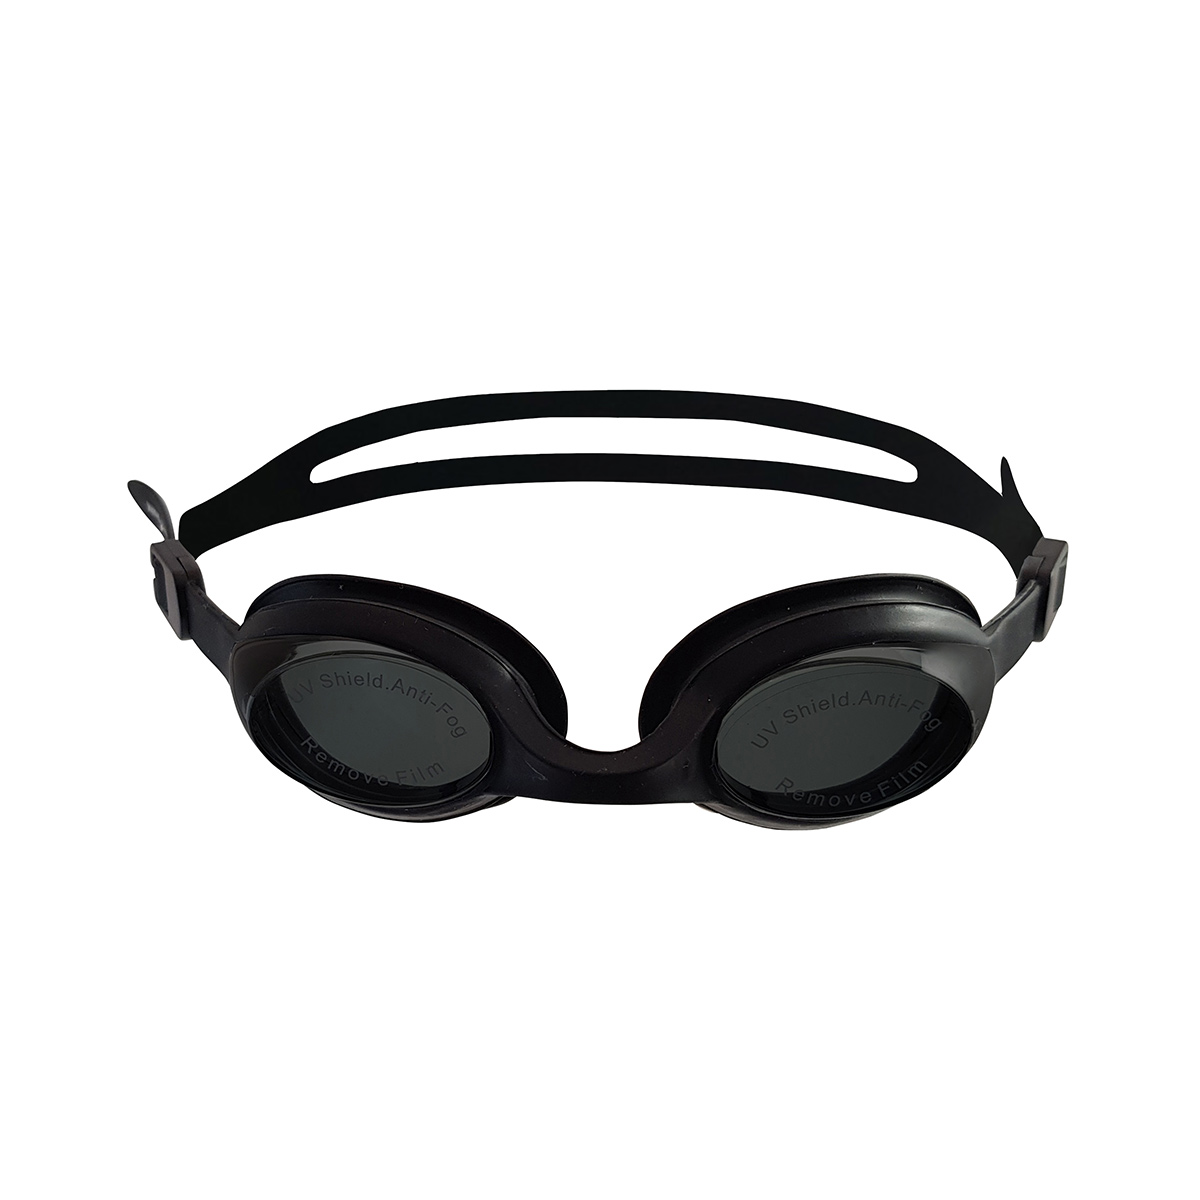  عینک شنا فری شارک مدل MC-2400 -  - 1